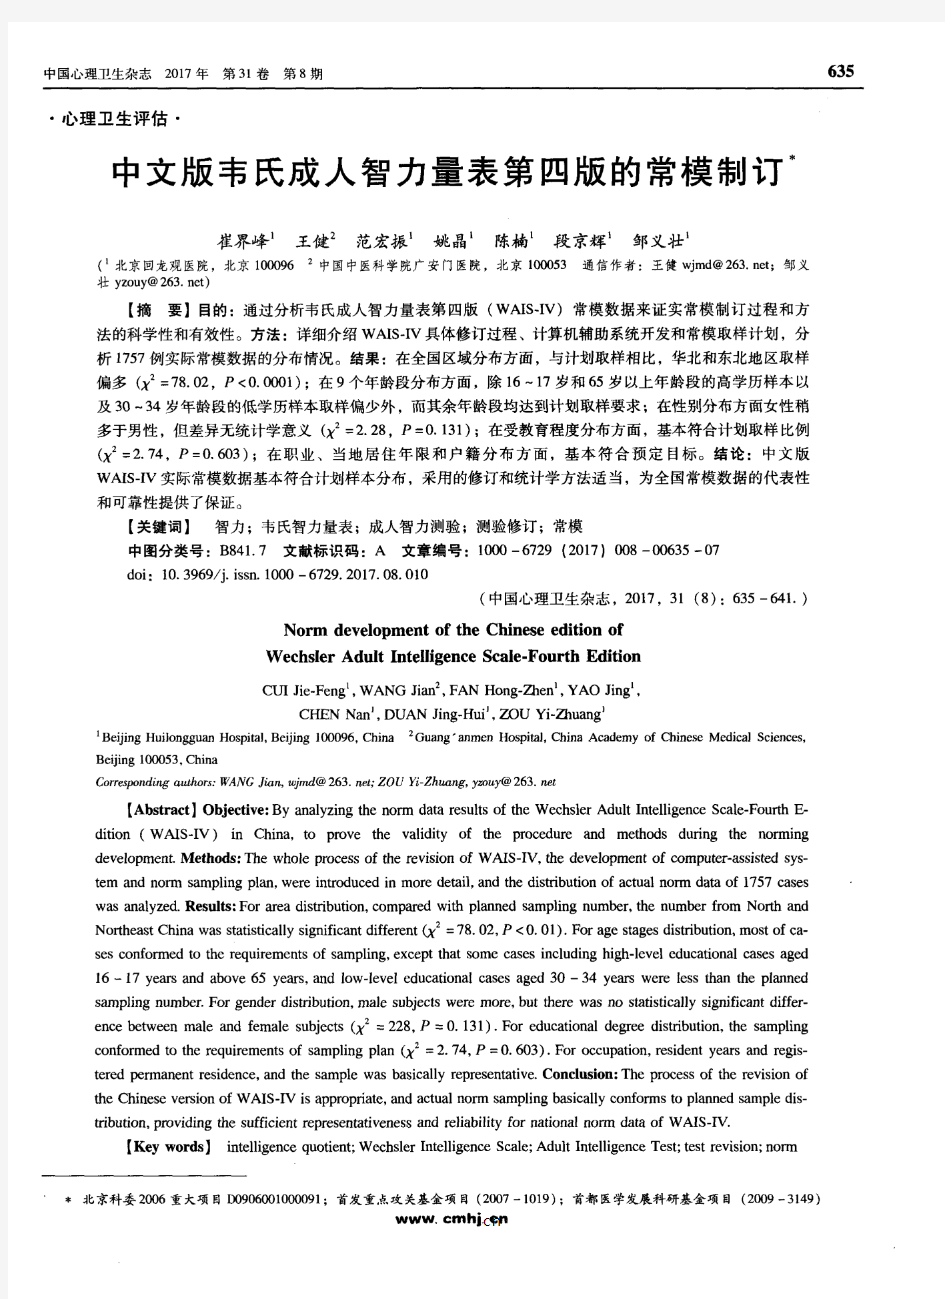 中文版韦氏成人智力量表第四版的常模制订